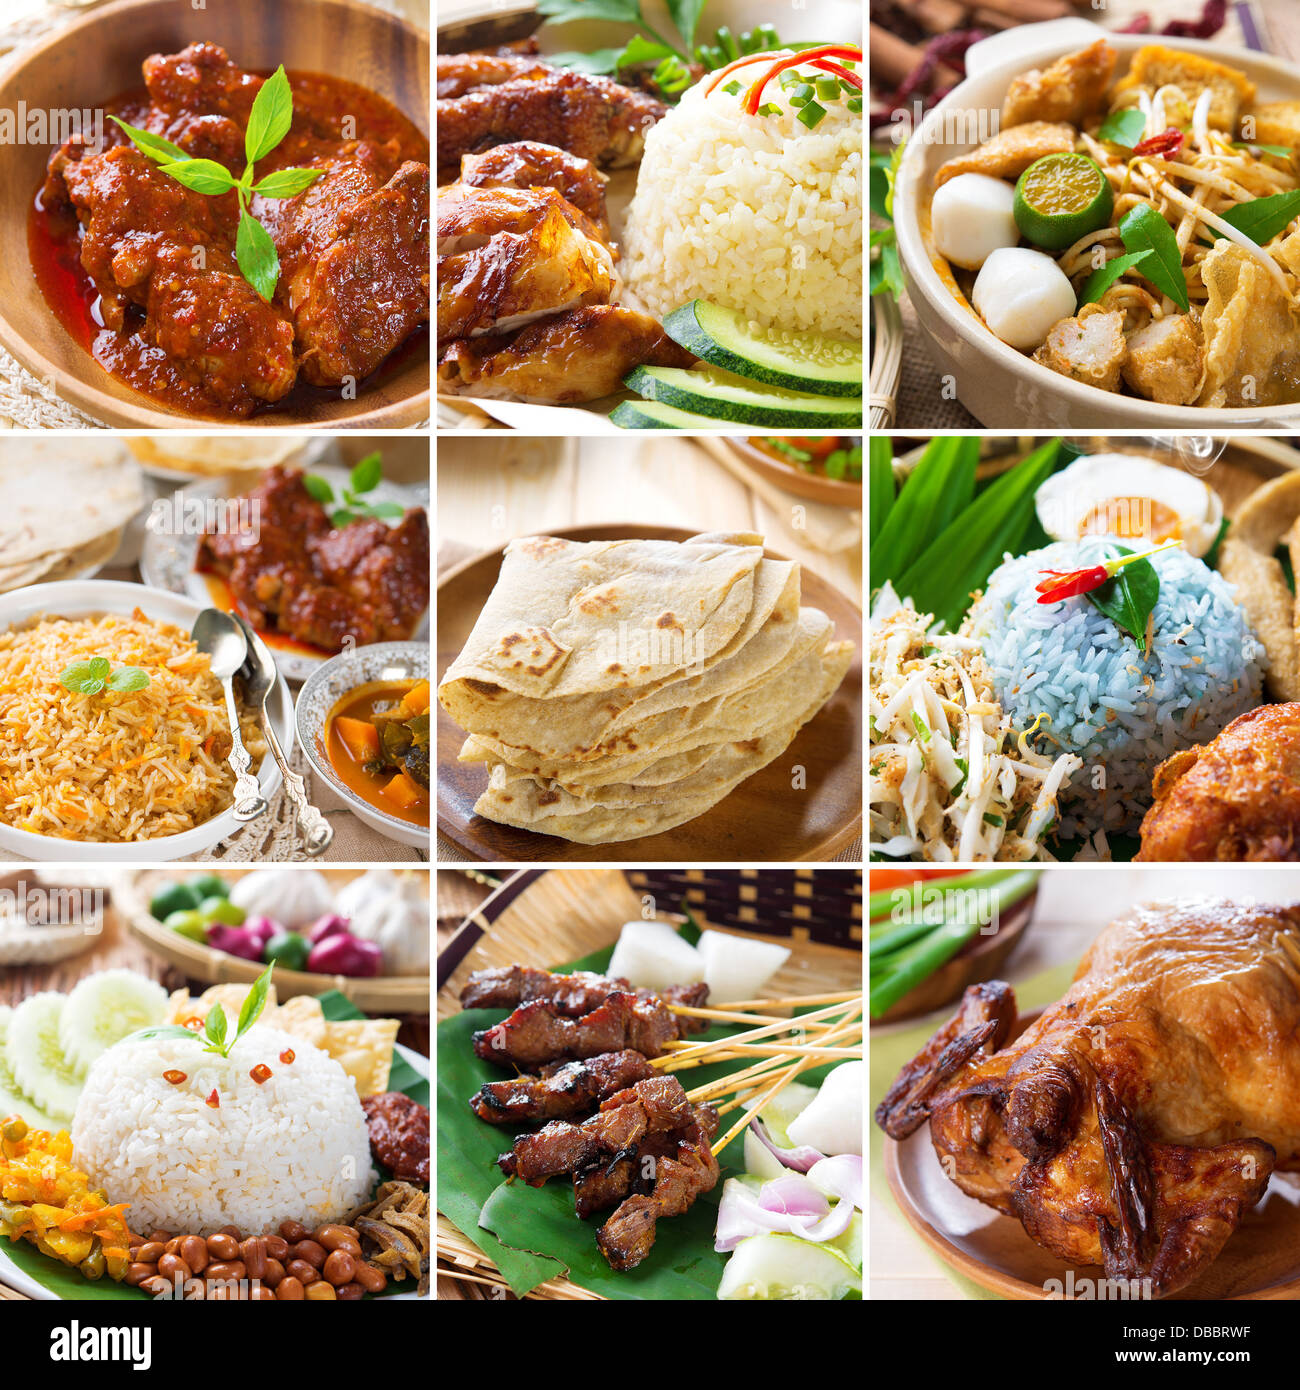 Asiatische Küche-Sammlung. Verschiedenen Asia Küche, Curry, Reis, Nudeln, Biryani, Roti Chapatti, Nasi Kerabu, Nasi Lemak, Satay und gebratenes Huhn. Stockfoto